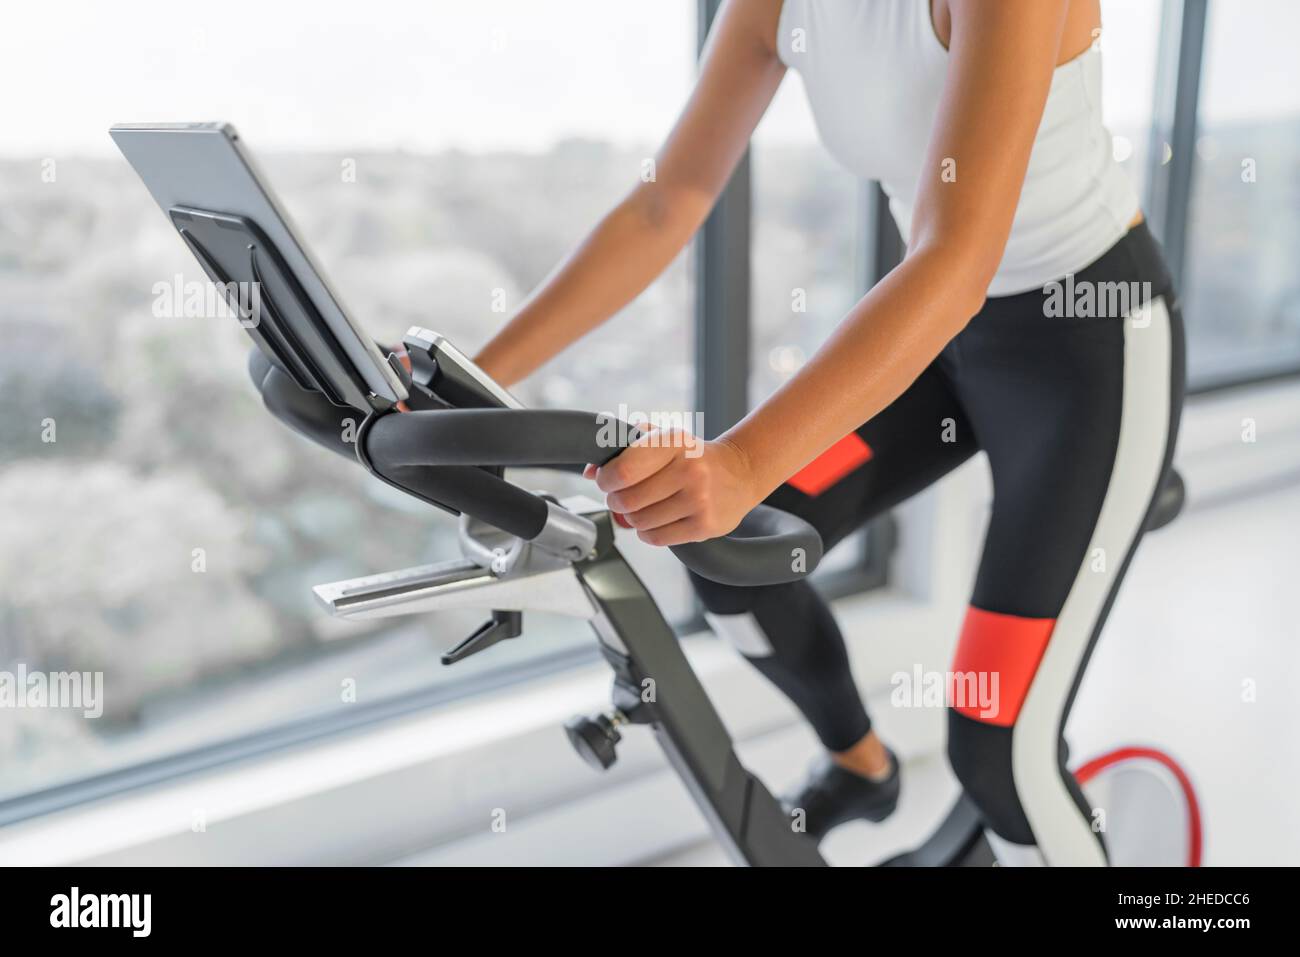 Trainieren Sie zu Hause auf einem Spin-Fahrrad-Fitness-Workout mit  Bildschirm. Frau, die auf dem Heimtrainer trainiert, schaut sich  Online-Videokurs für Cardio-Training an Stockfotografie - Alamy